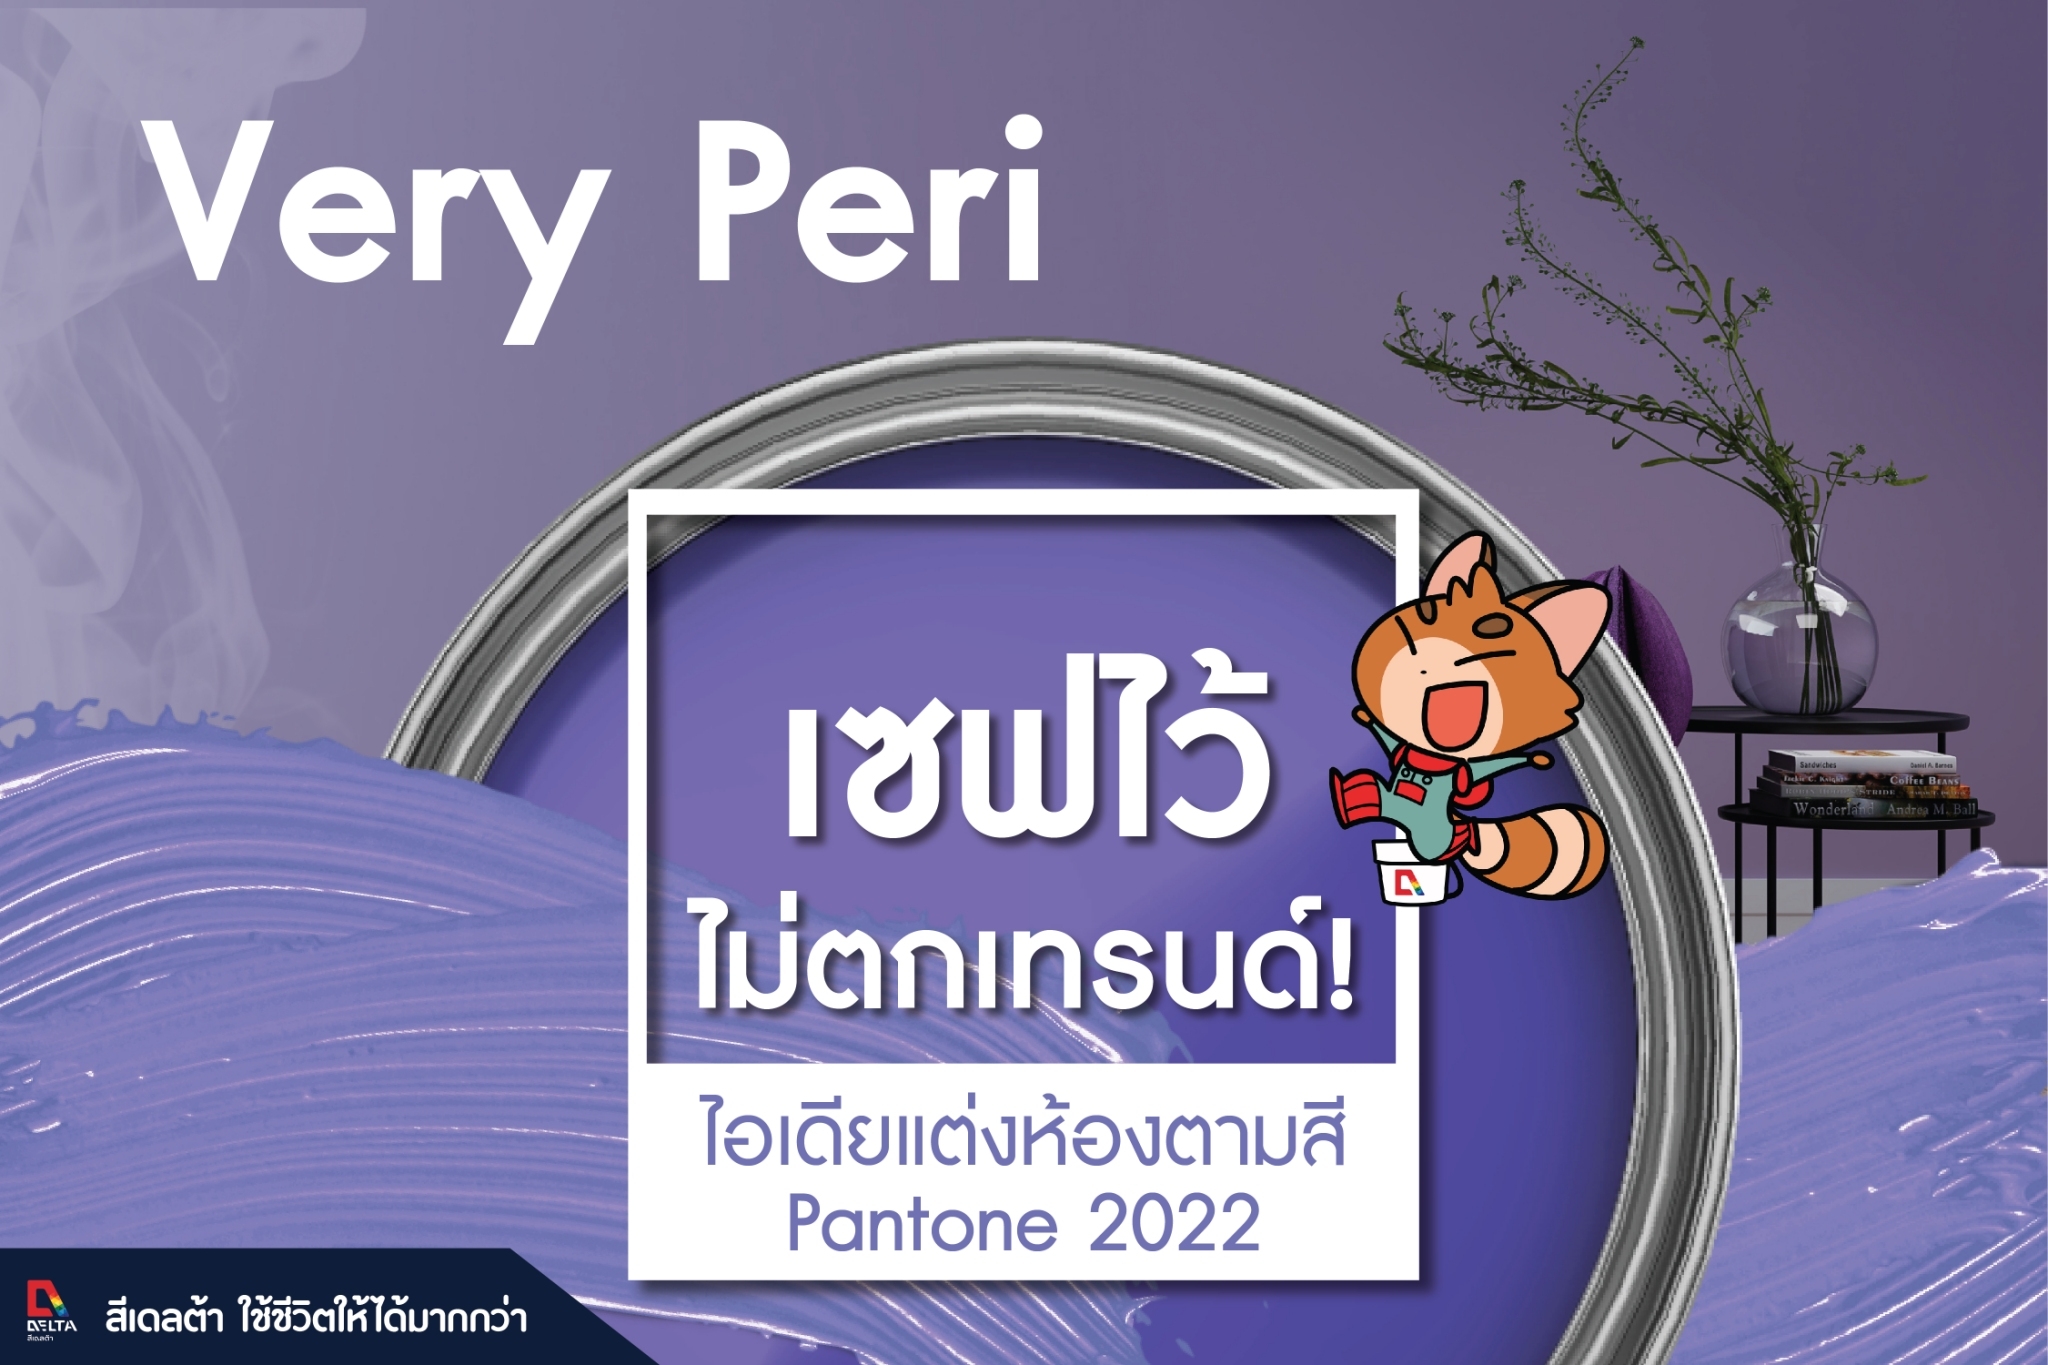 สีแห่งปี 2022 “Very Peri” โทนสีม่วงอมน้ำเงิน สีเดลต้า